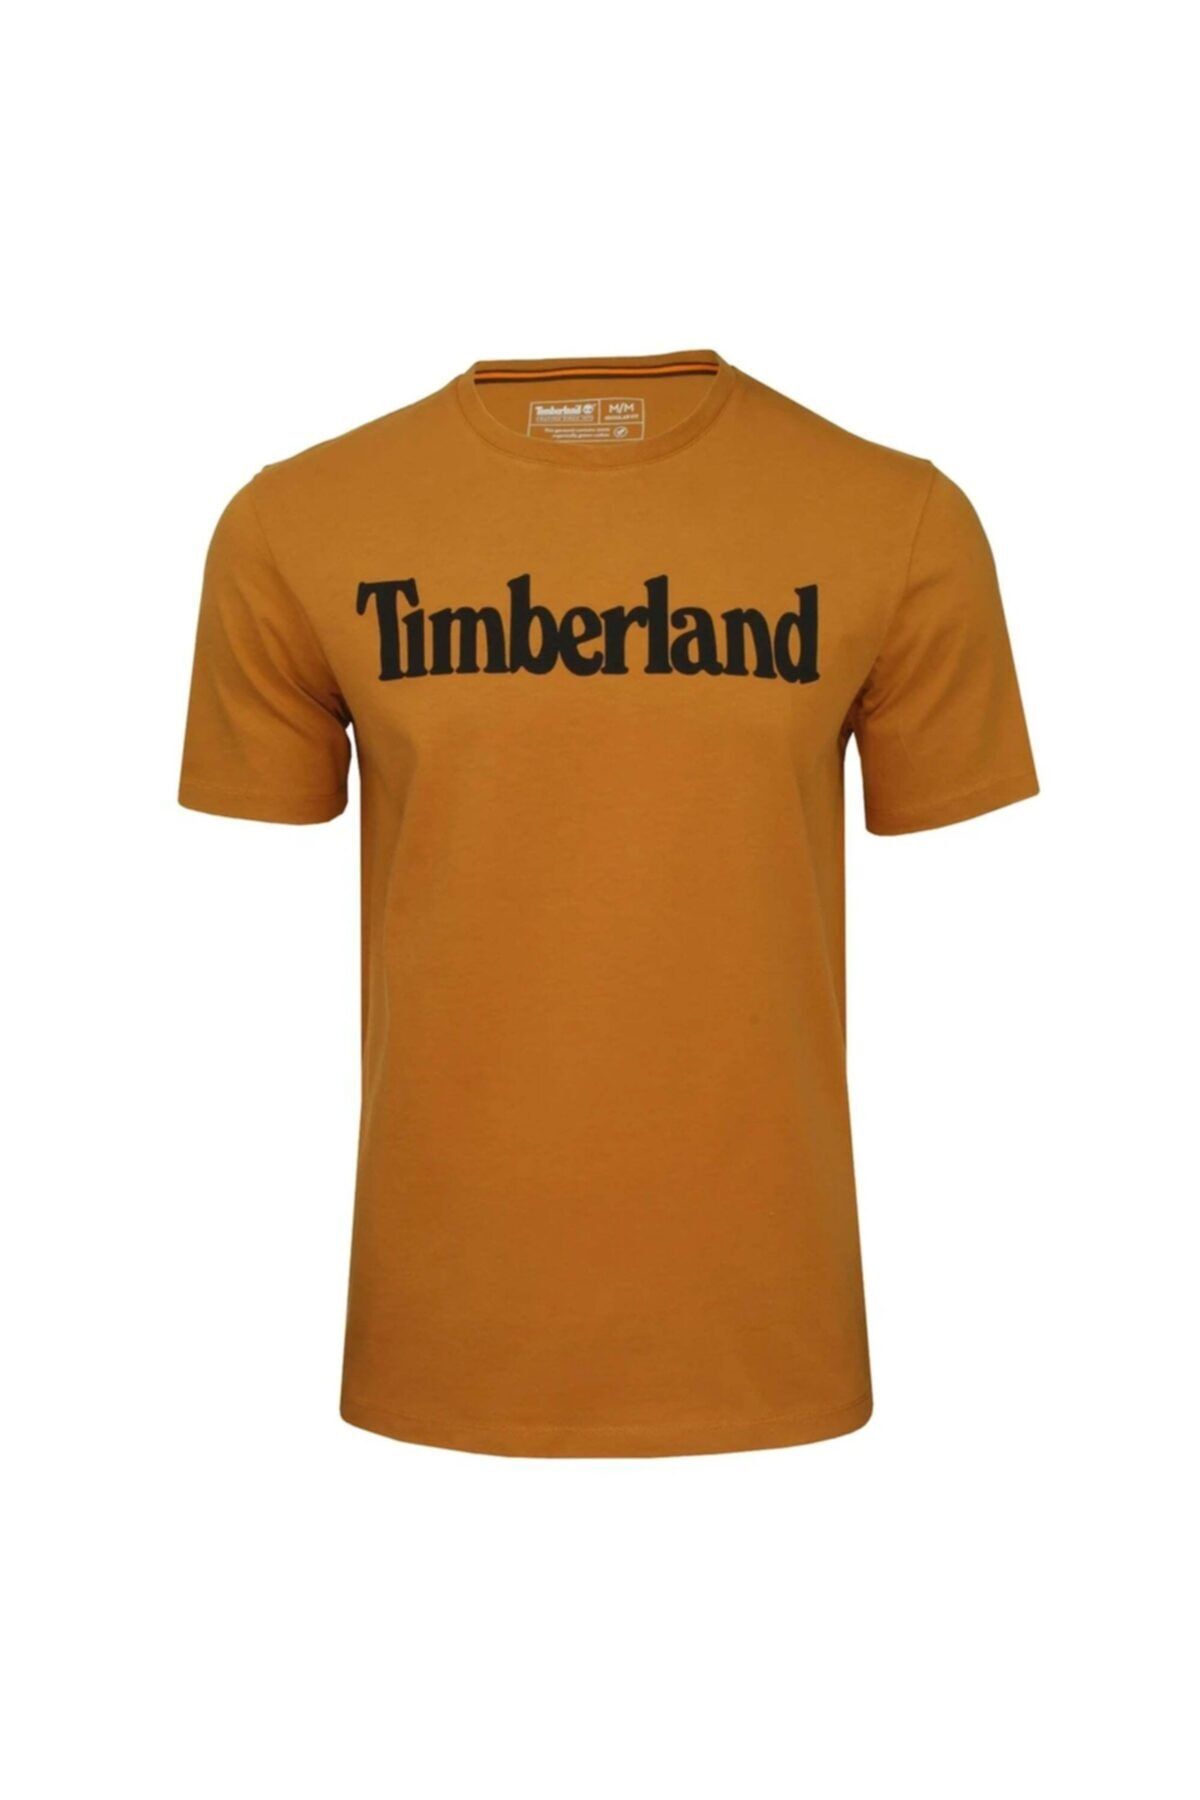 Timberland SS KENNEBEC RIVER LINEAR Turuncu Erkek T-Shirt 101096745